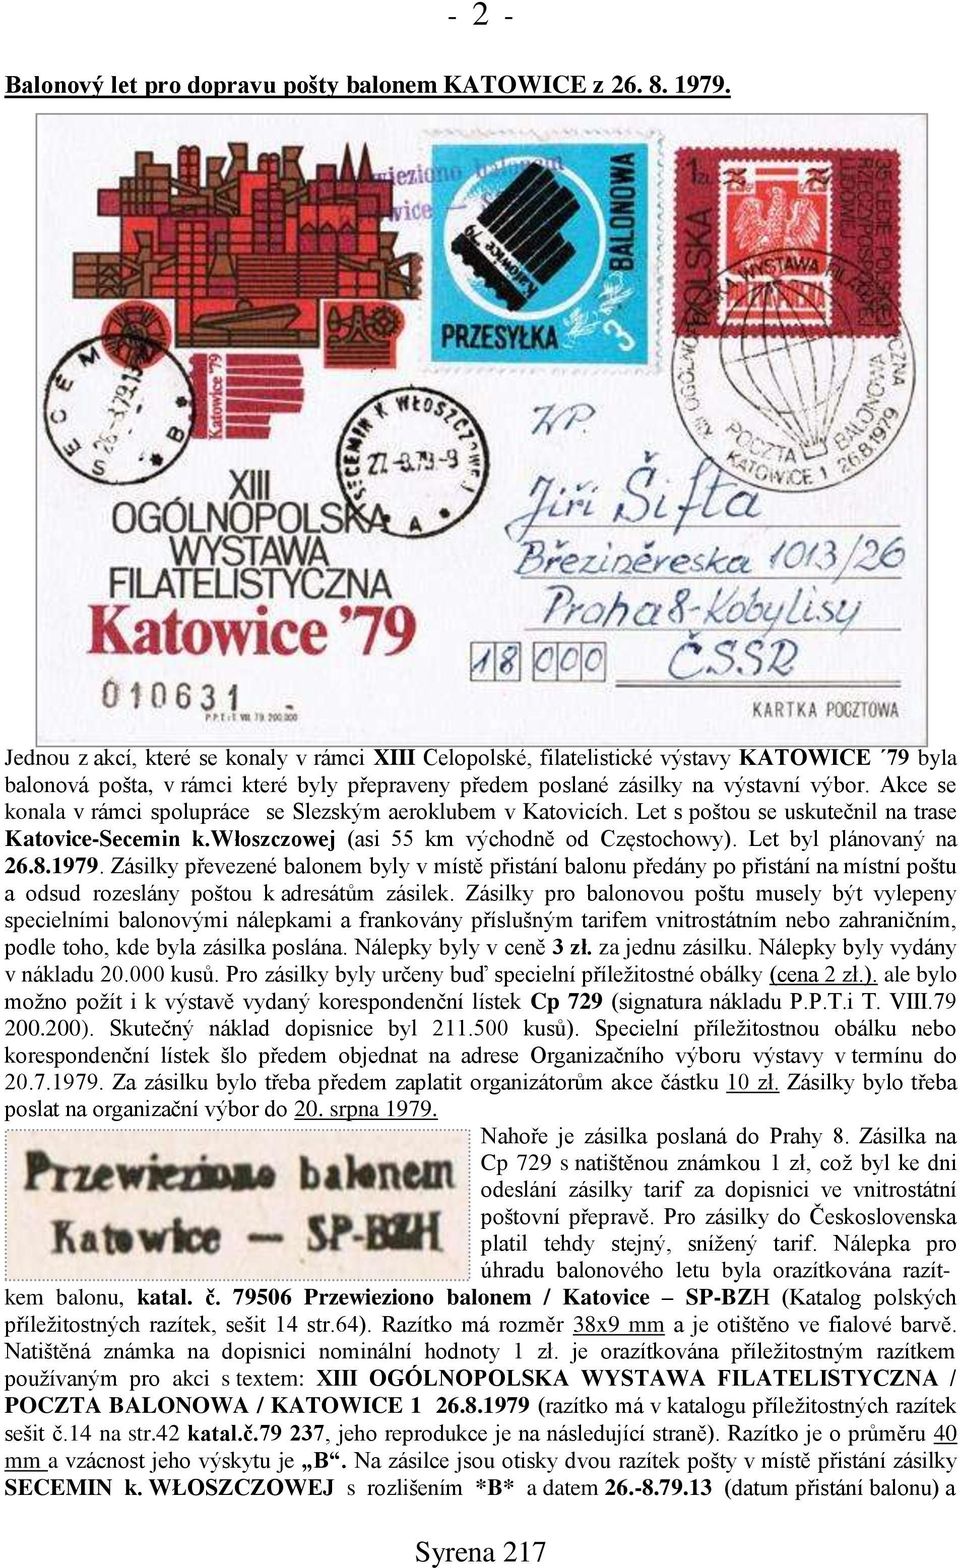 Akce se konala v rámci spolupráce se Slezským aeroklubem v Katovicích. Let s poštou se uskutečnil na trase Katovice-Secemin k.włoszczowej (asi 55 km východně od Częstochowy). Let byl plánovaný na 26.